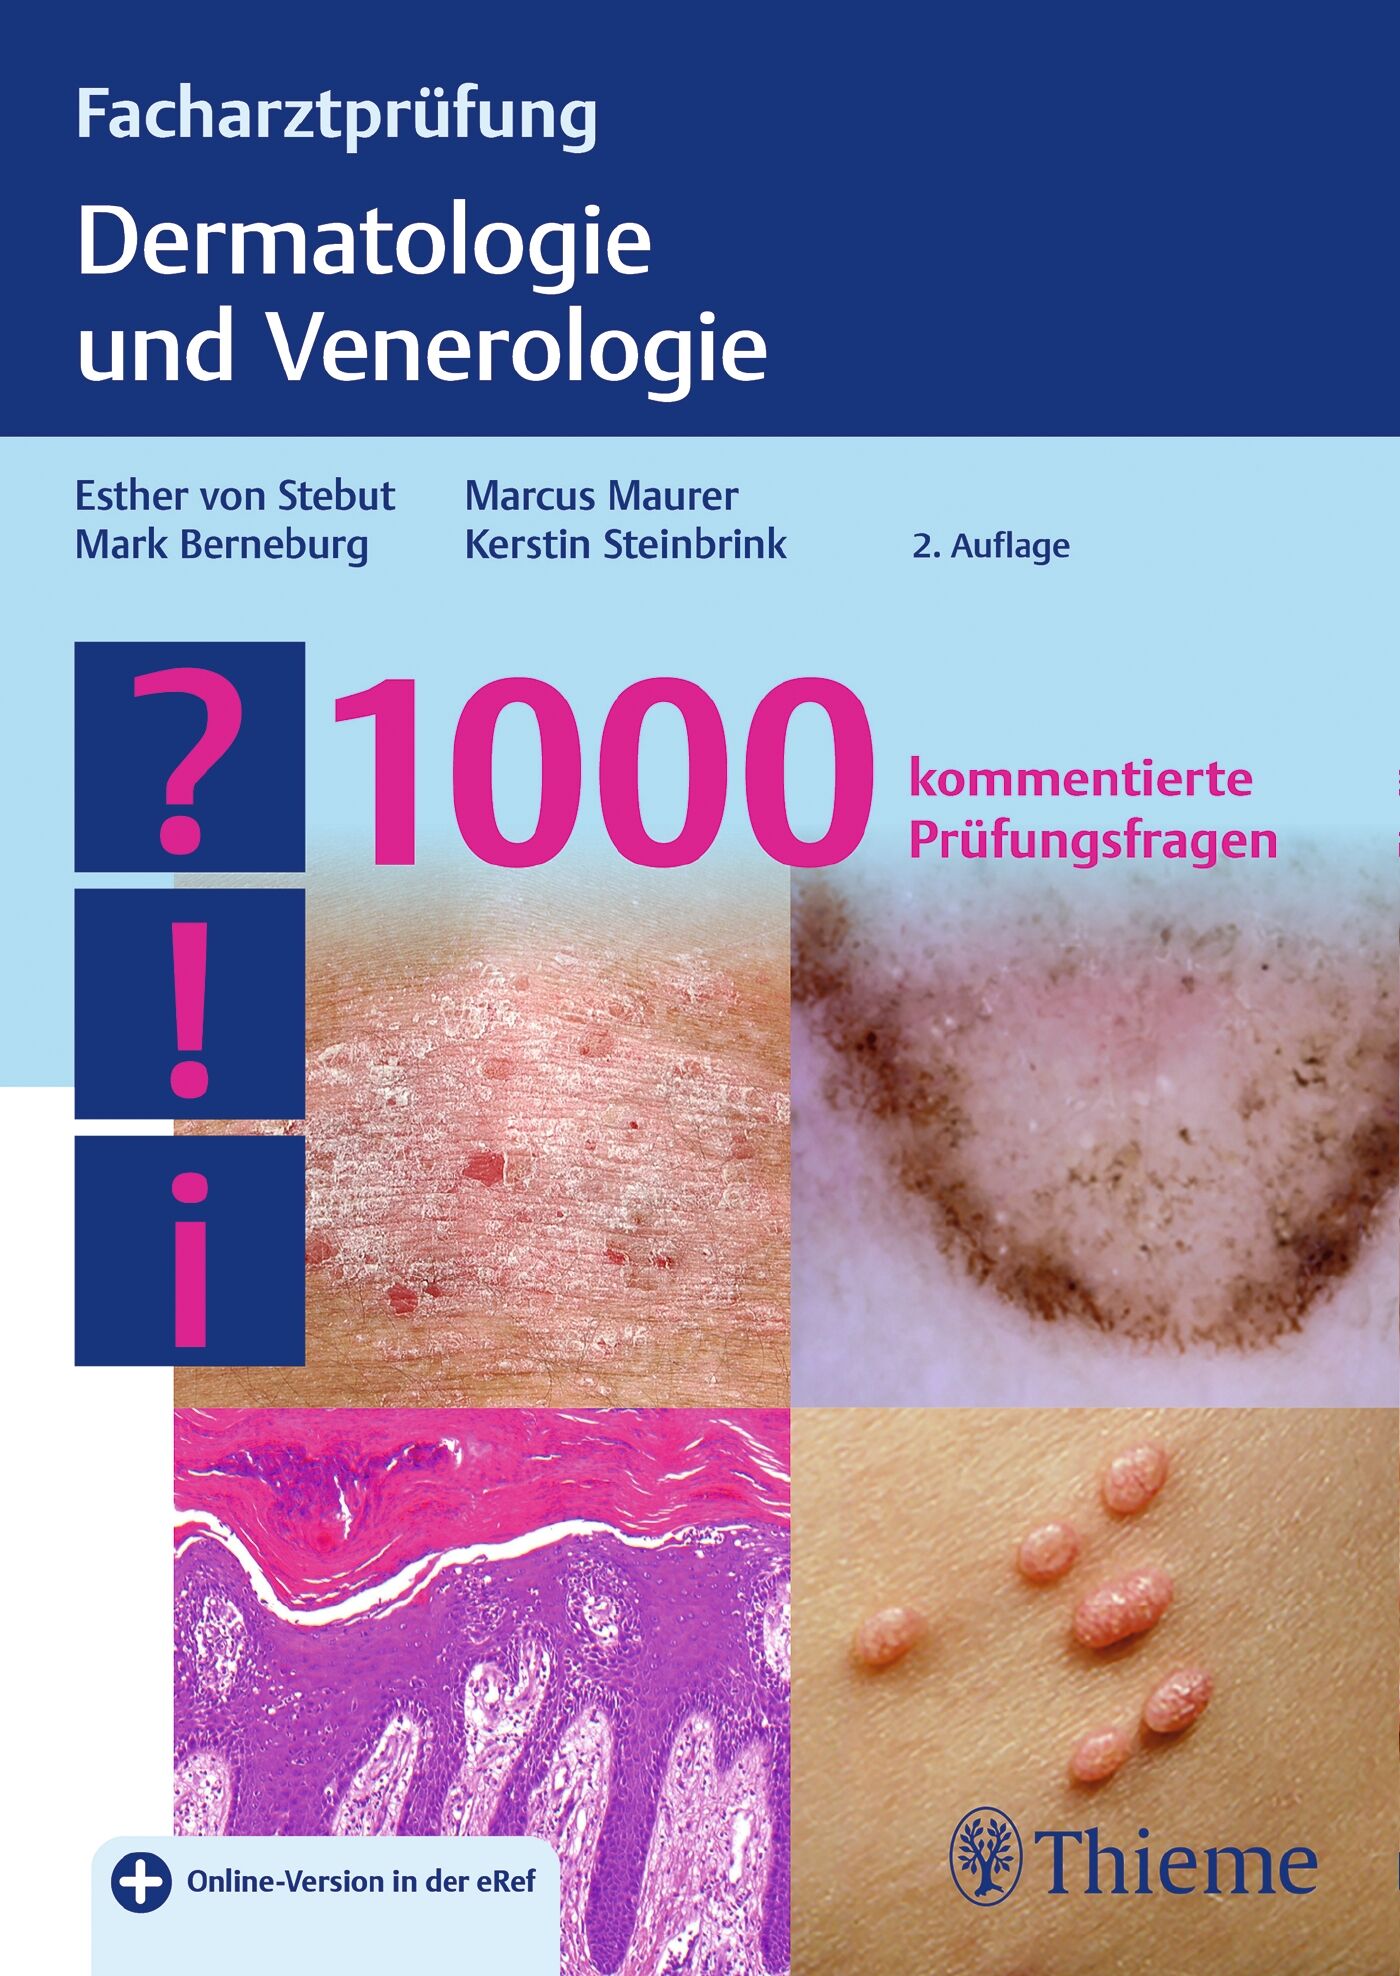 Facharztprüfung Dermatologie und Venerologie, 9783132428171